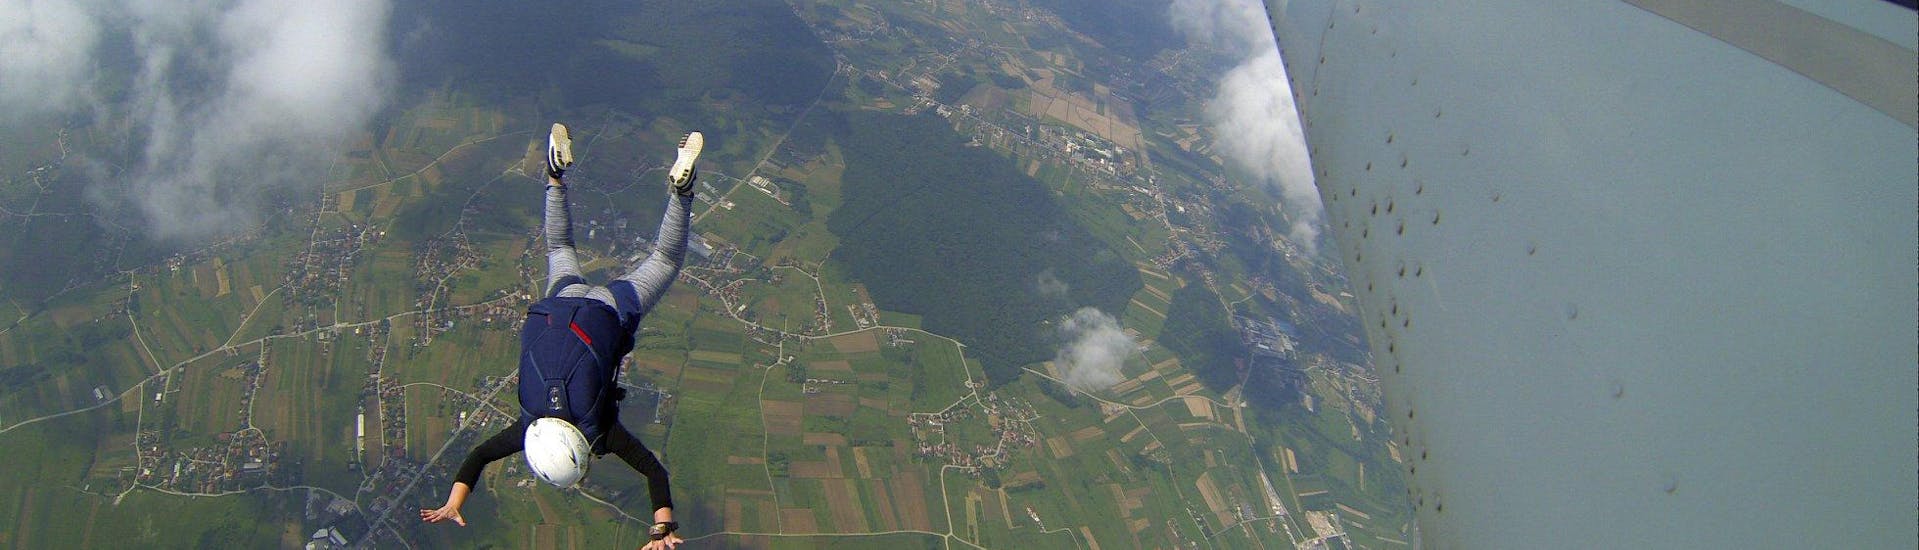 Paracaidismo en tándem en Ježdovec - Aerodrome Zagreb-Lučko.